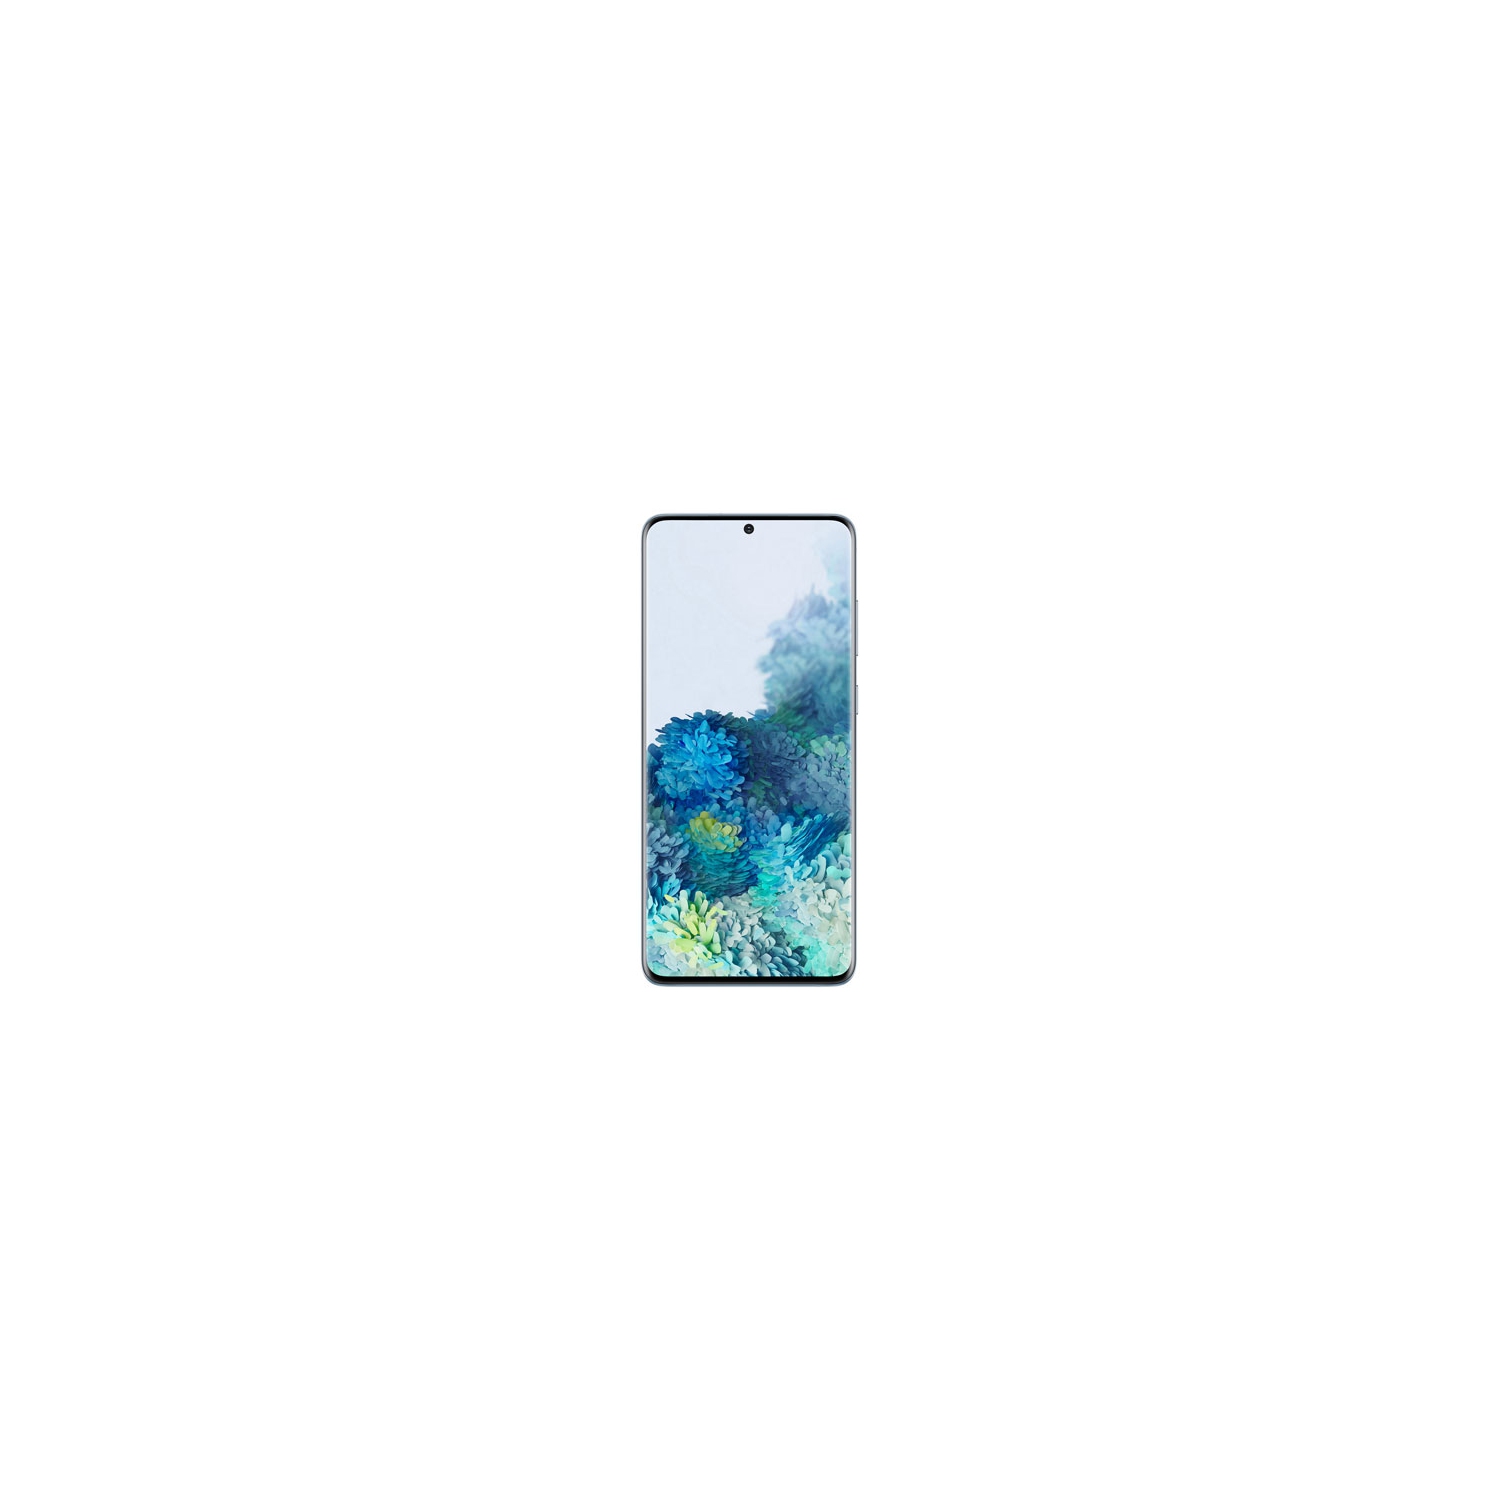 Refurbished (Fair) - Samsung Galaxy Note20 5G 128GB - Mystic Grey - Unlocked